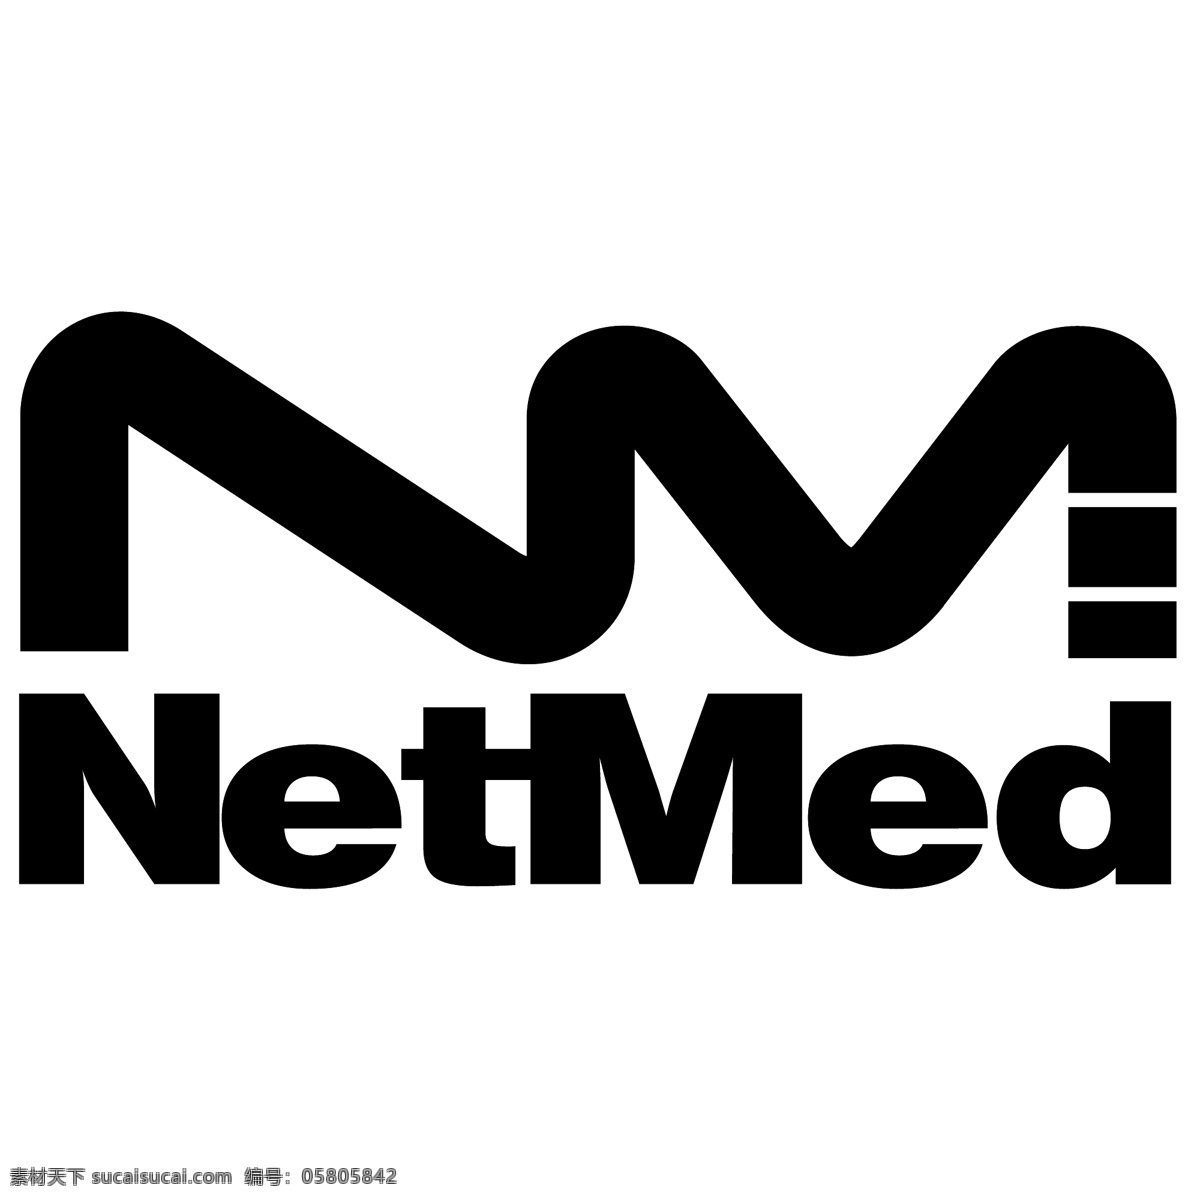 网络杂志 免费 标志 下载网 医学 psd源文件 logo设计